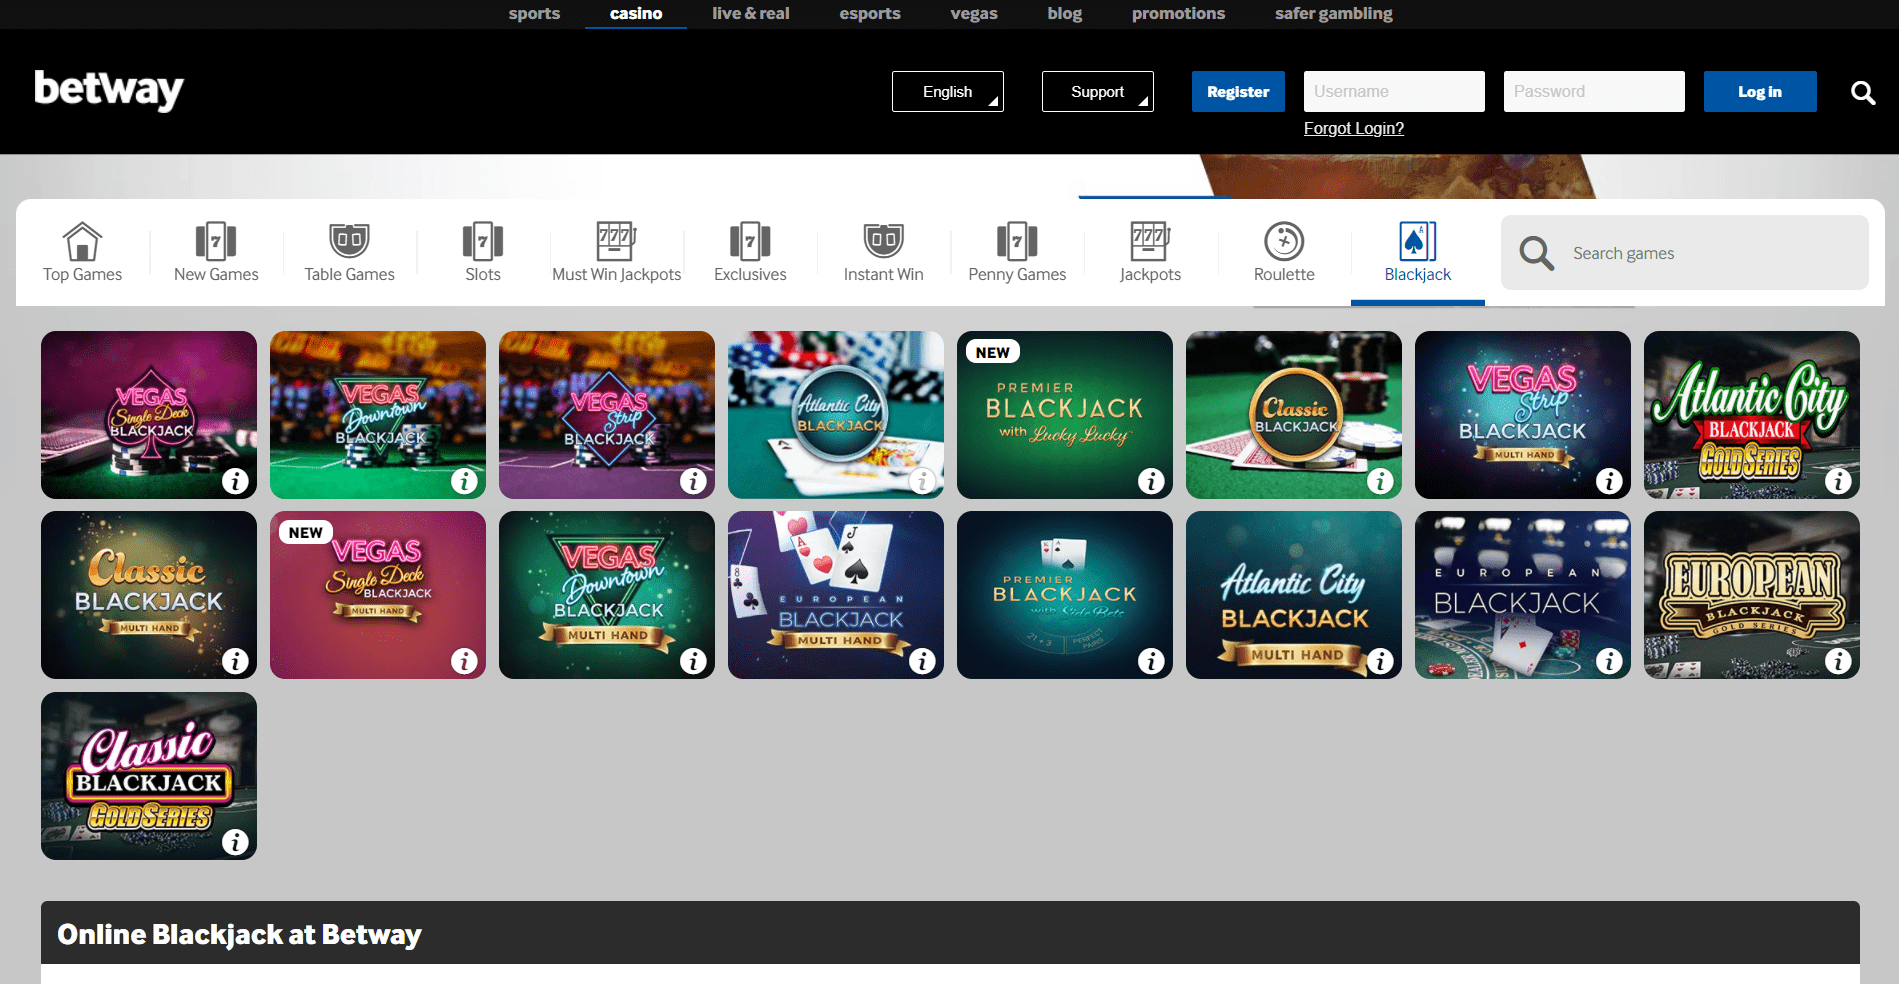 betway - online blackjack casino in UAE